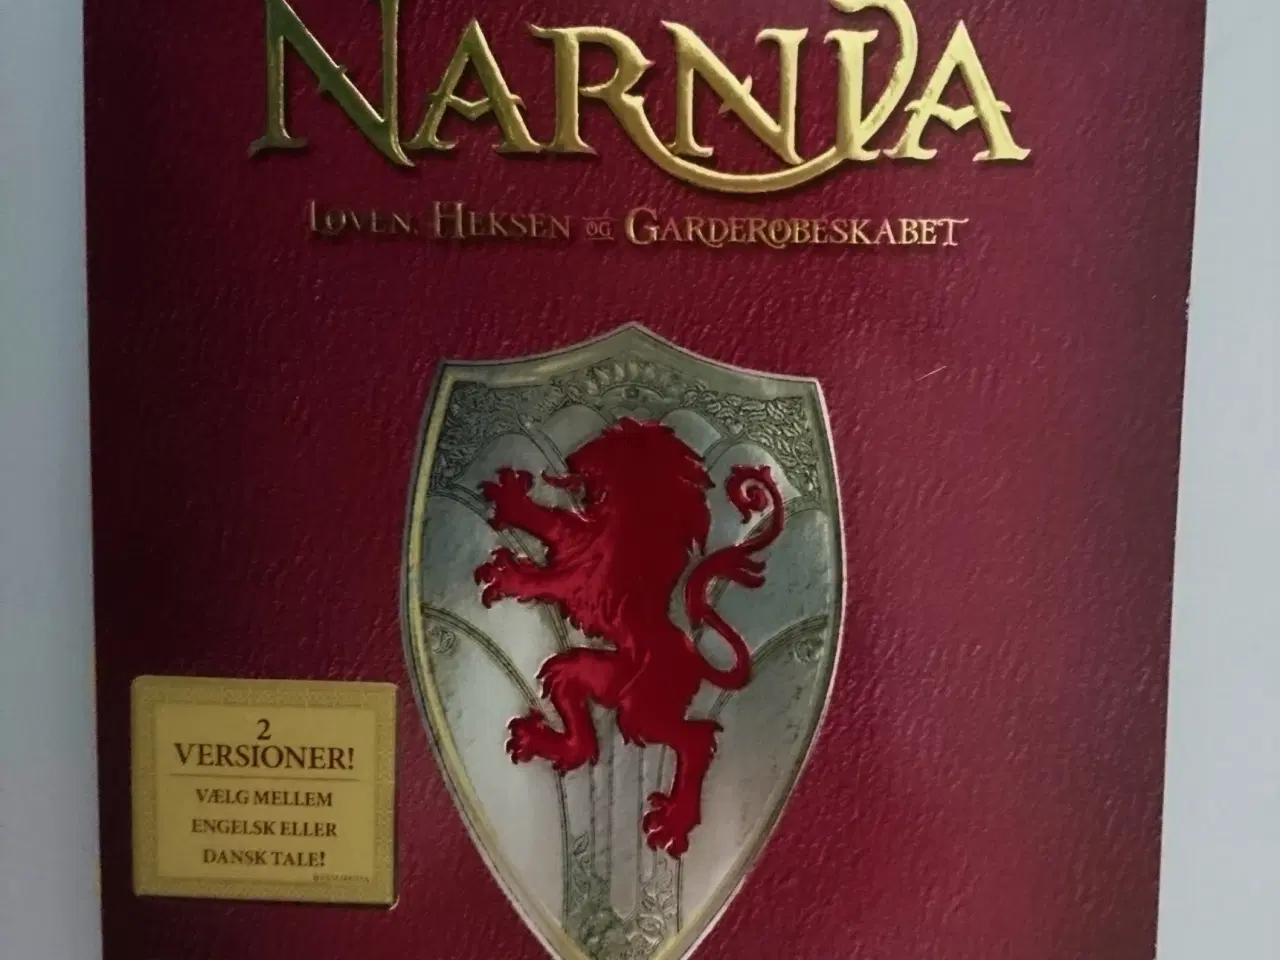 Billede 1 - Narnia - løven heksen og garderobeskabet (DVD)